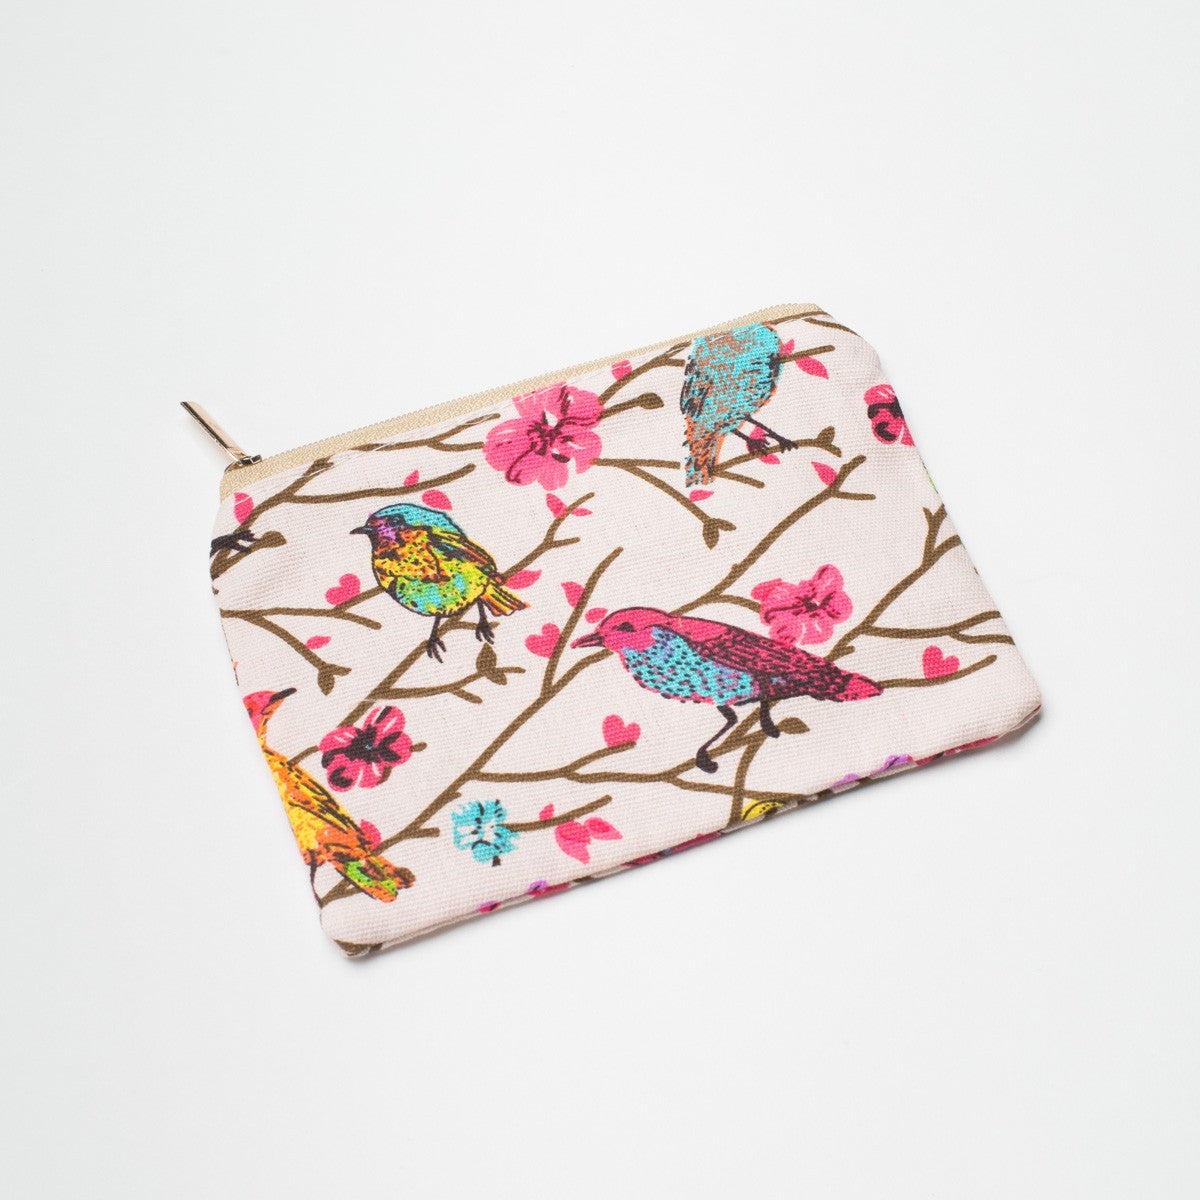 Coin purse in vibrant coloured bird print